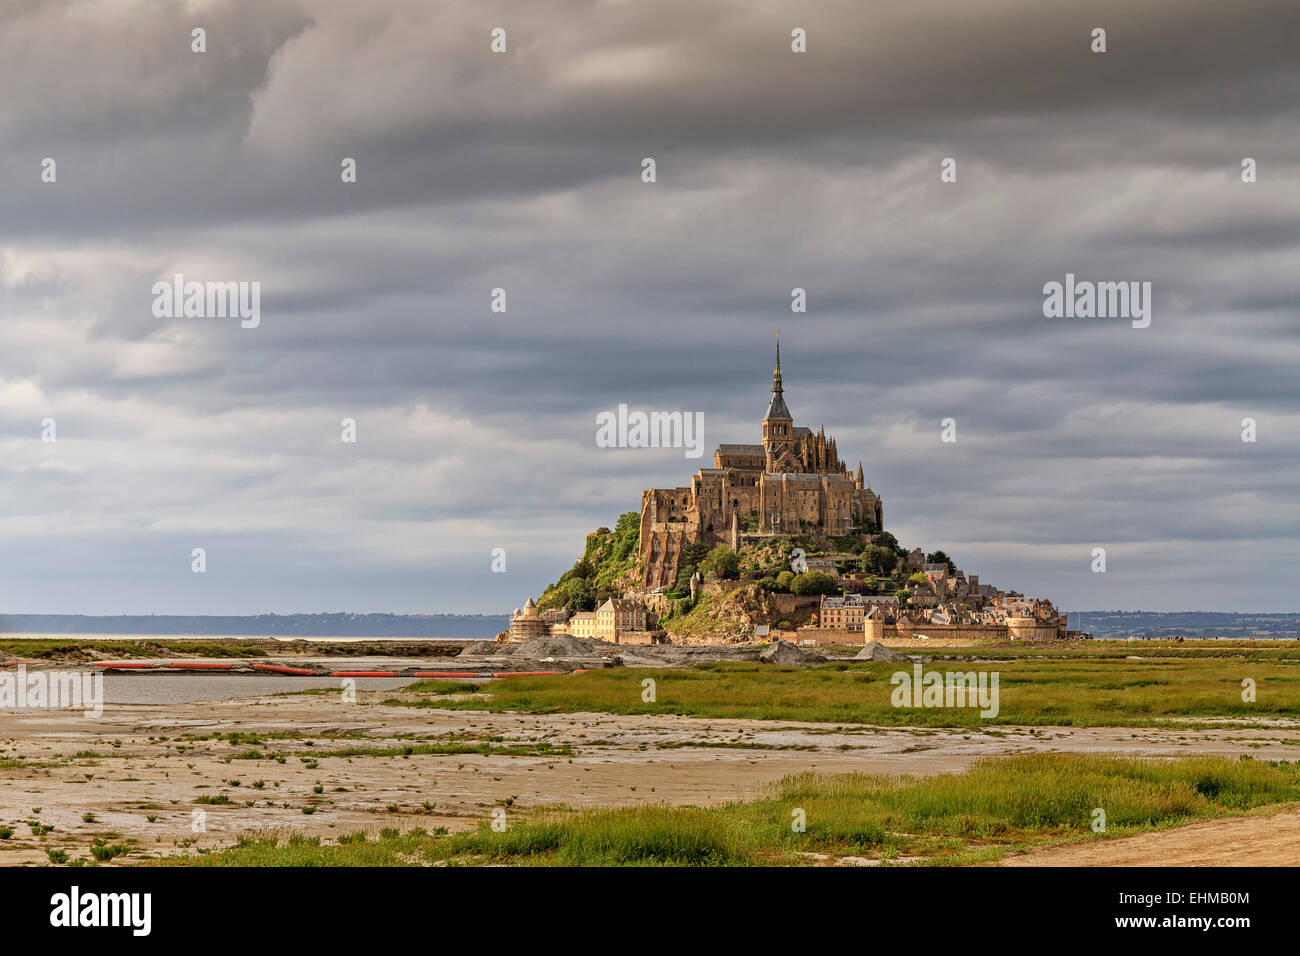 Le Mont-Saint-Michel avec l'abbaye bénédictine sur l'îlot rocheux du Mont Saint-Michel dans la lumière du soir Banque D'Images